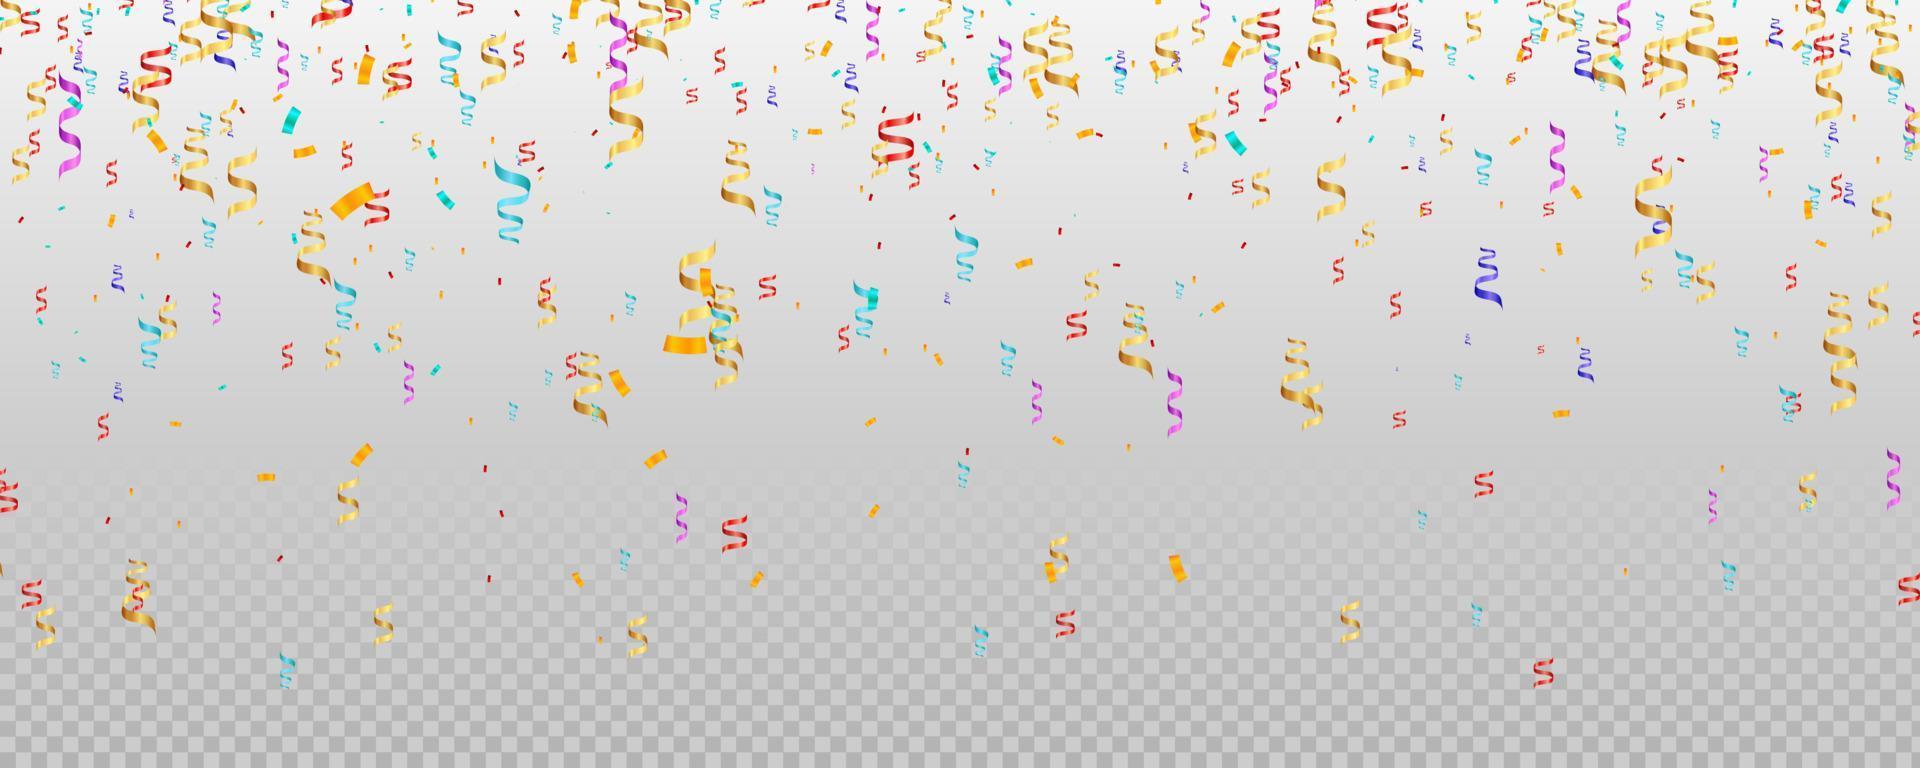 fond de confettis. fond de confettis illustration vectorielle. fond de vecteur de confettis de fête et d'anniversaire.